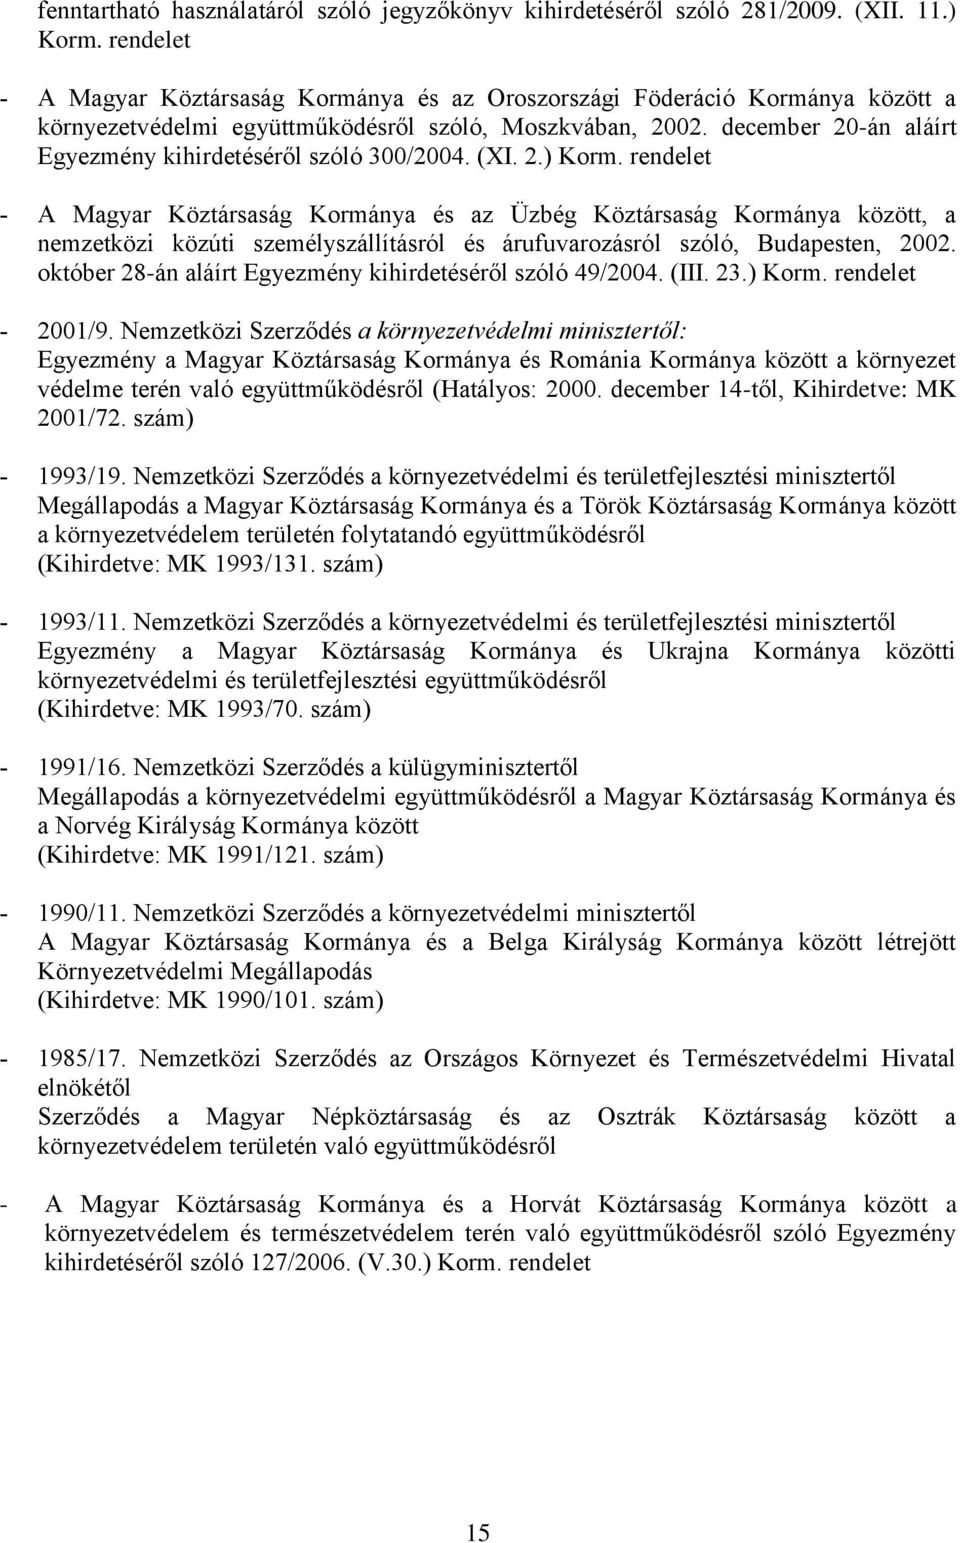 (XI. 2.) Korm. A Magyar Köztársaság Kormánya és az Üzbég Köztársaság Kormánya között, a nemzetközi közúti személyszállításról és árufuvarozásról szóló, Budapesten, 2002.